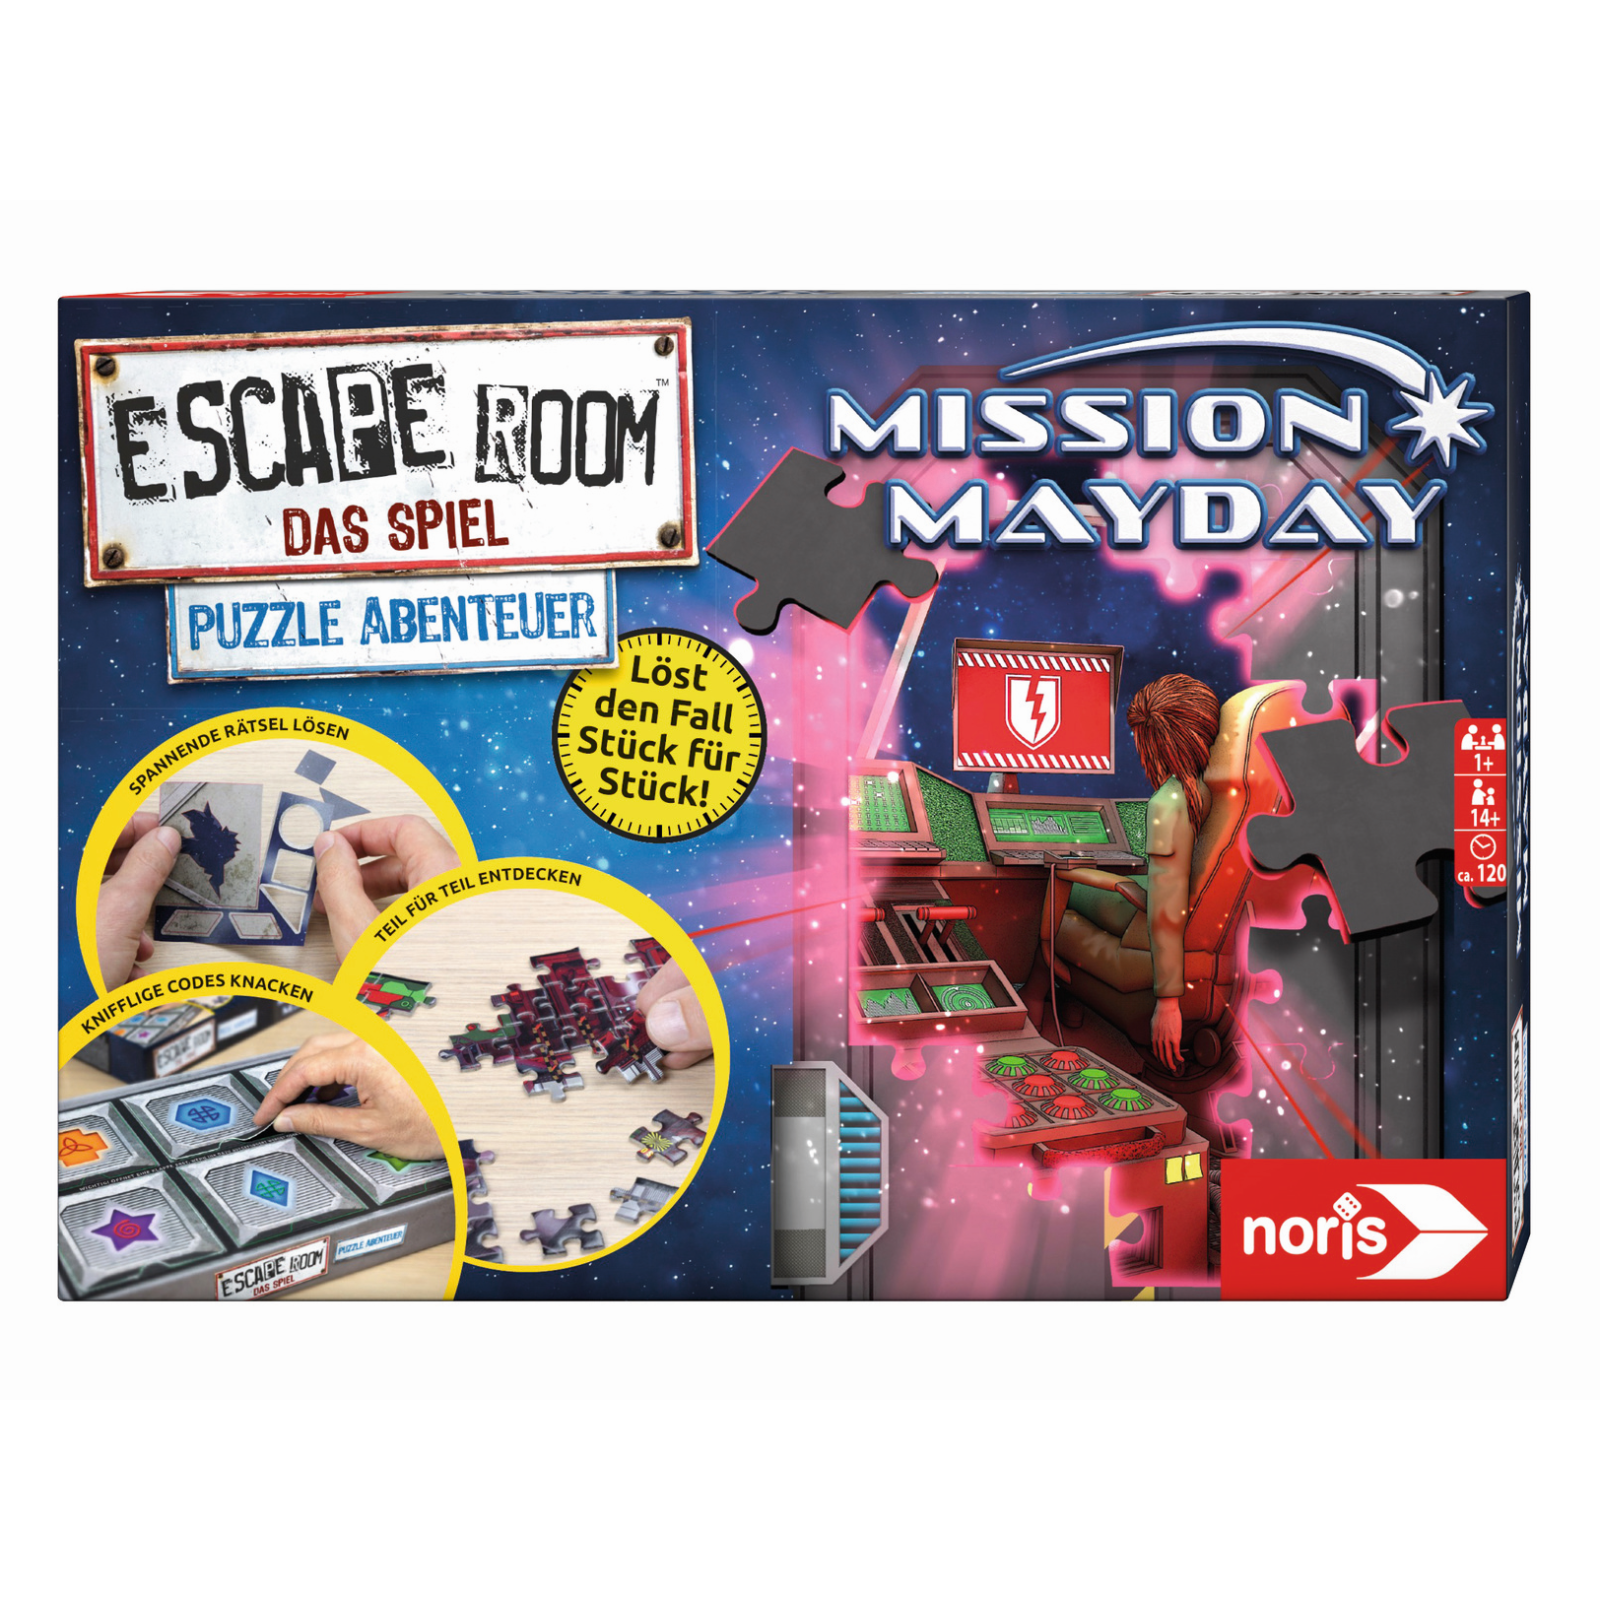 Escape Room Das Spiel Puzzle Abenteuer Mission Mayday von Noris Spiele